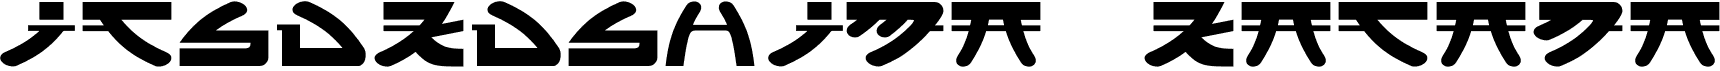 preview image of the Itsukushima Katana font